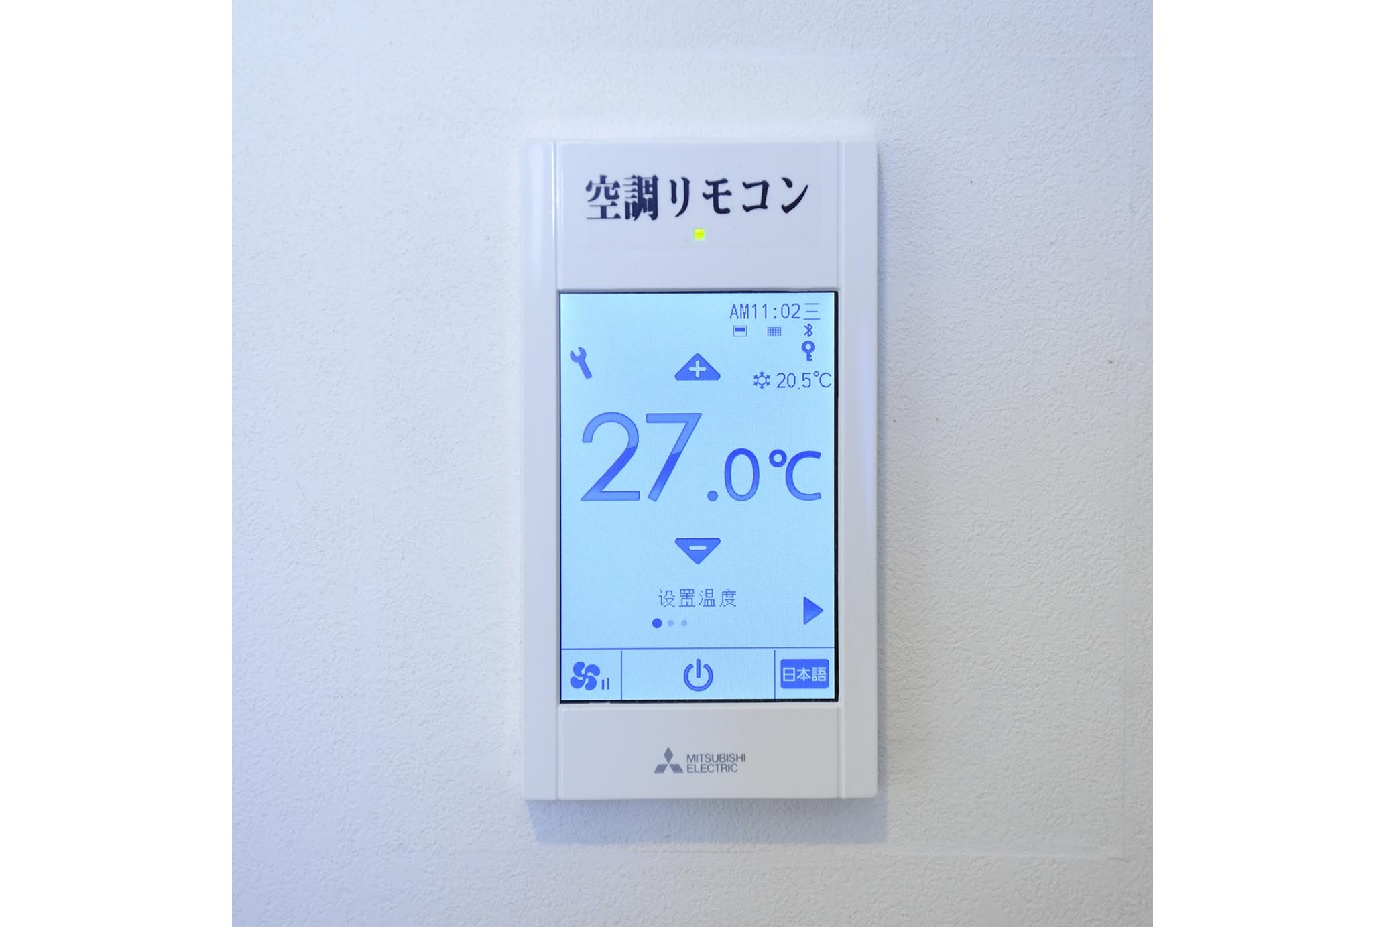 3言語対応の客室リモコン「MAコンパクトリモコン」。寒暖や温度、風量などを自在に調節できる